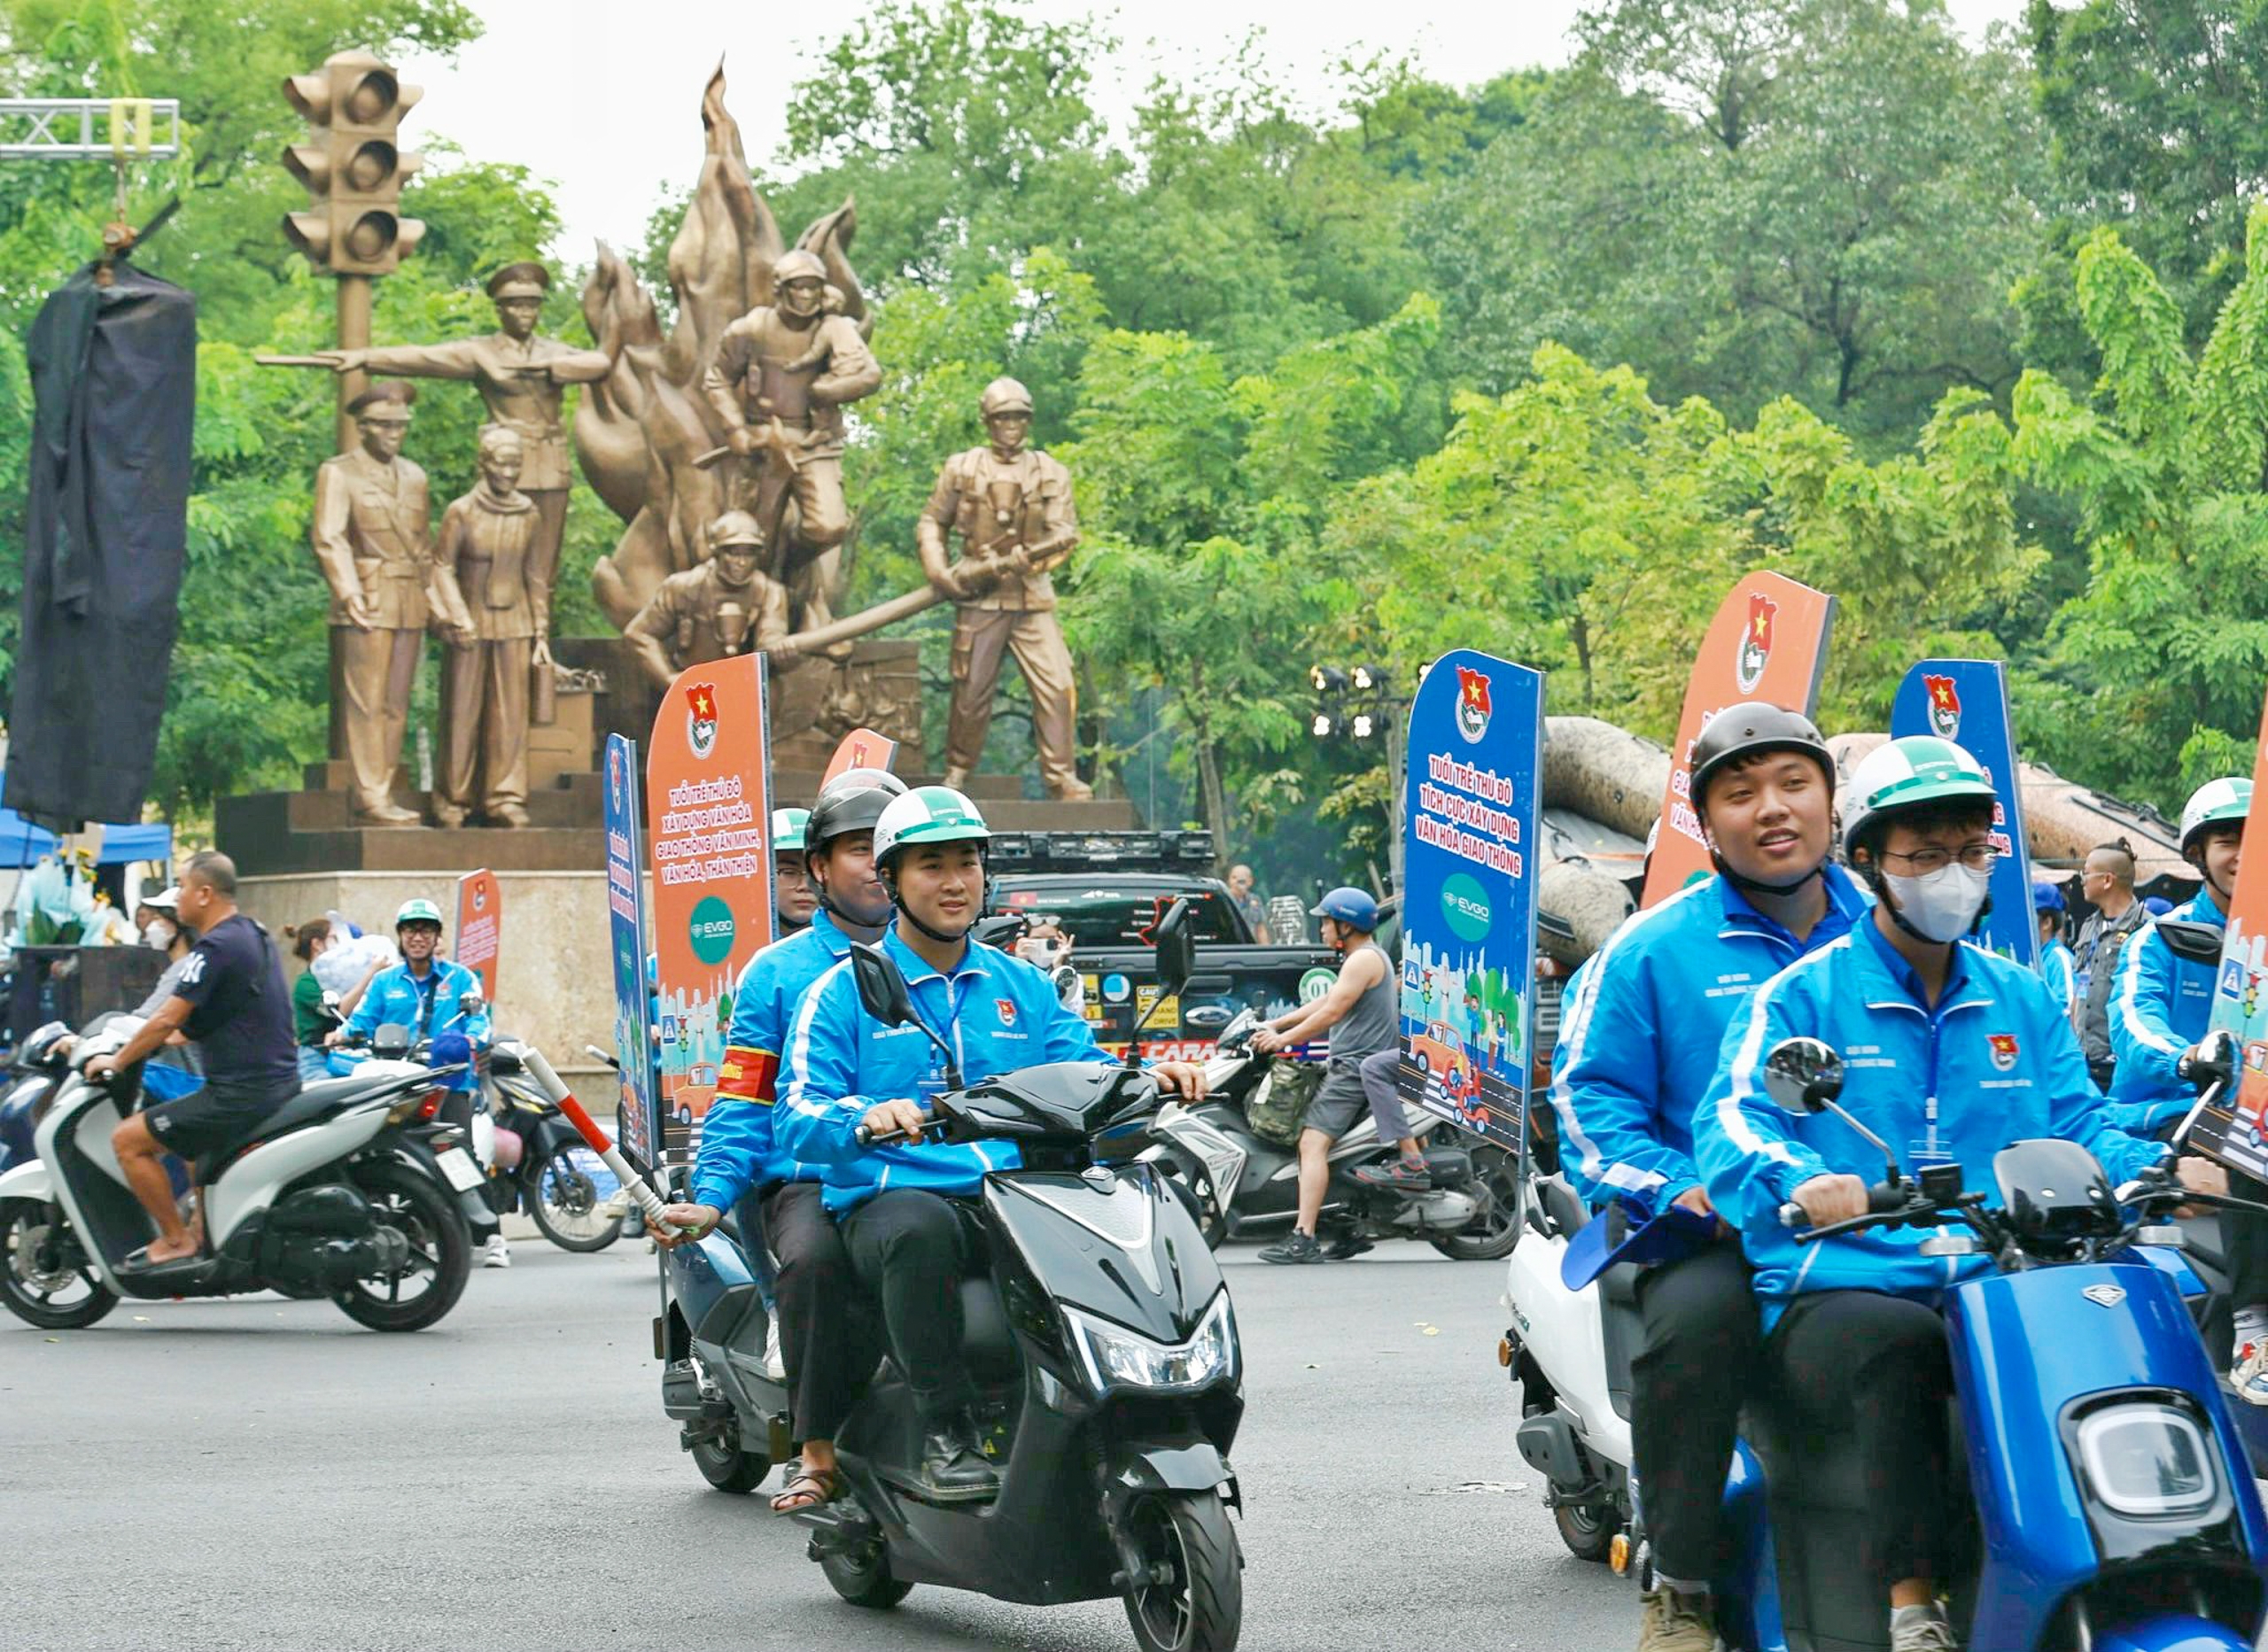 Ngày hội Thanh thiếu niên Hà Nội tham gia gìn giữ an toàn giao thông